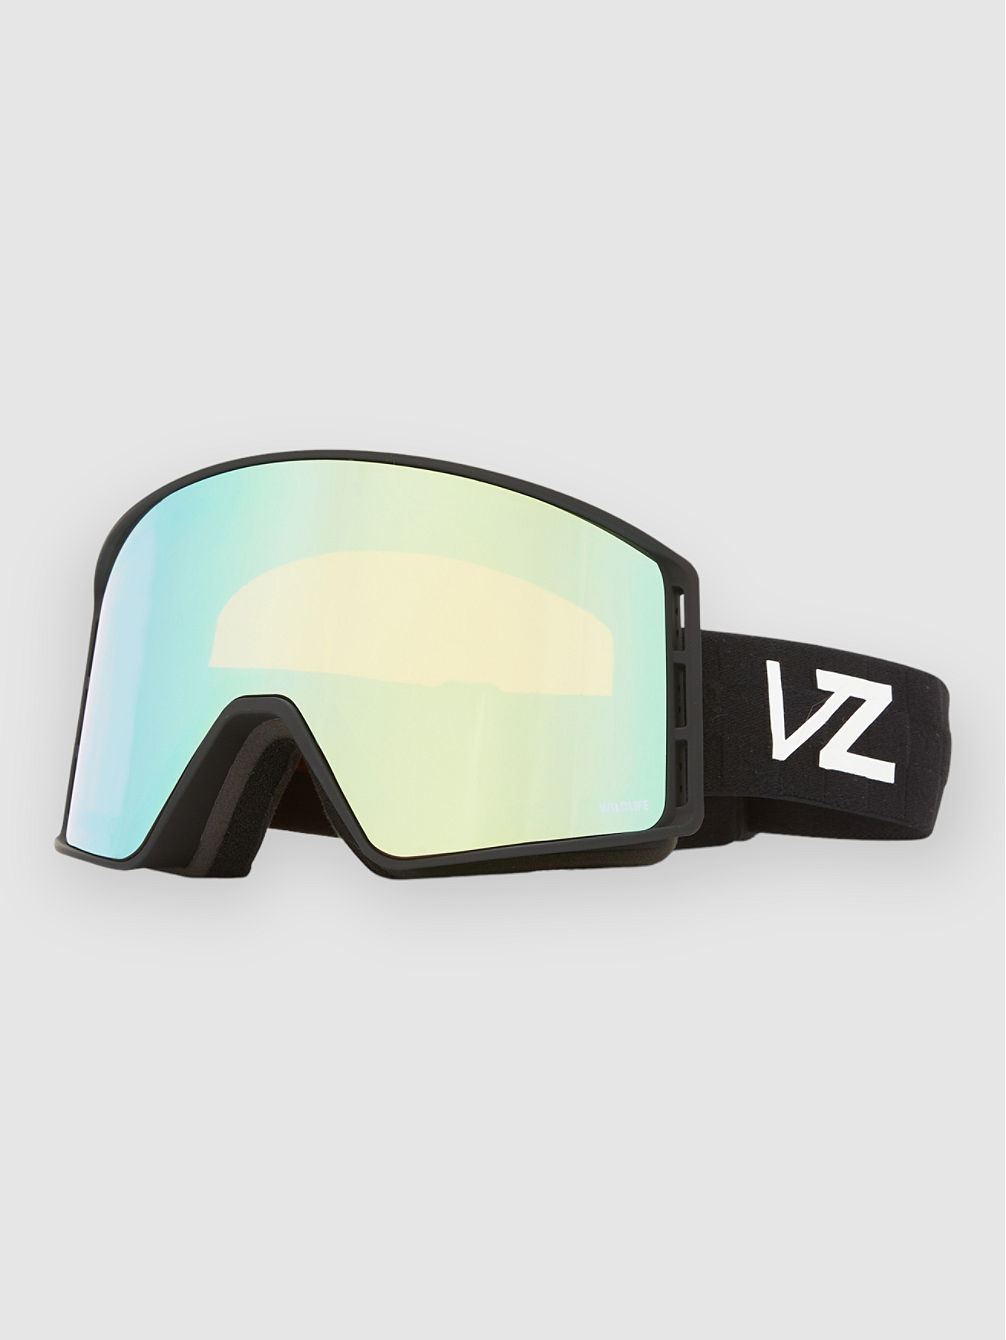 Mach Vfs Black Gafas de Ventisca